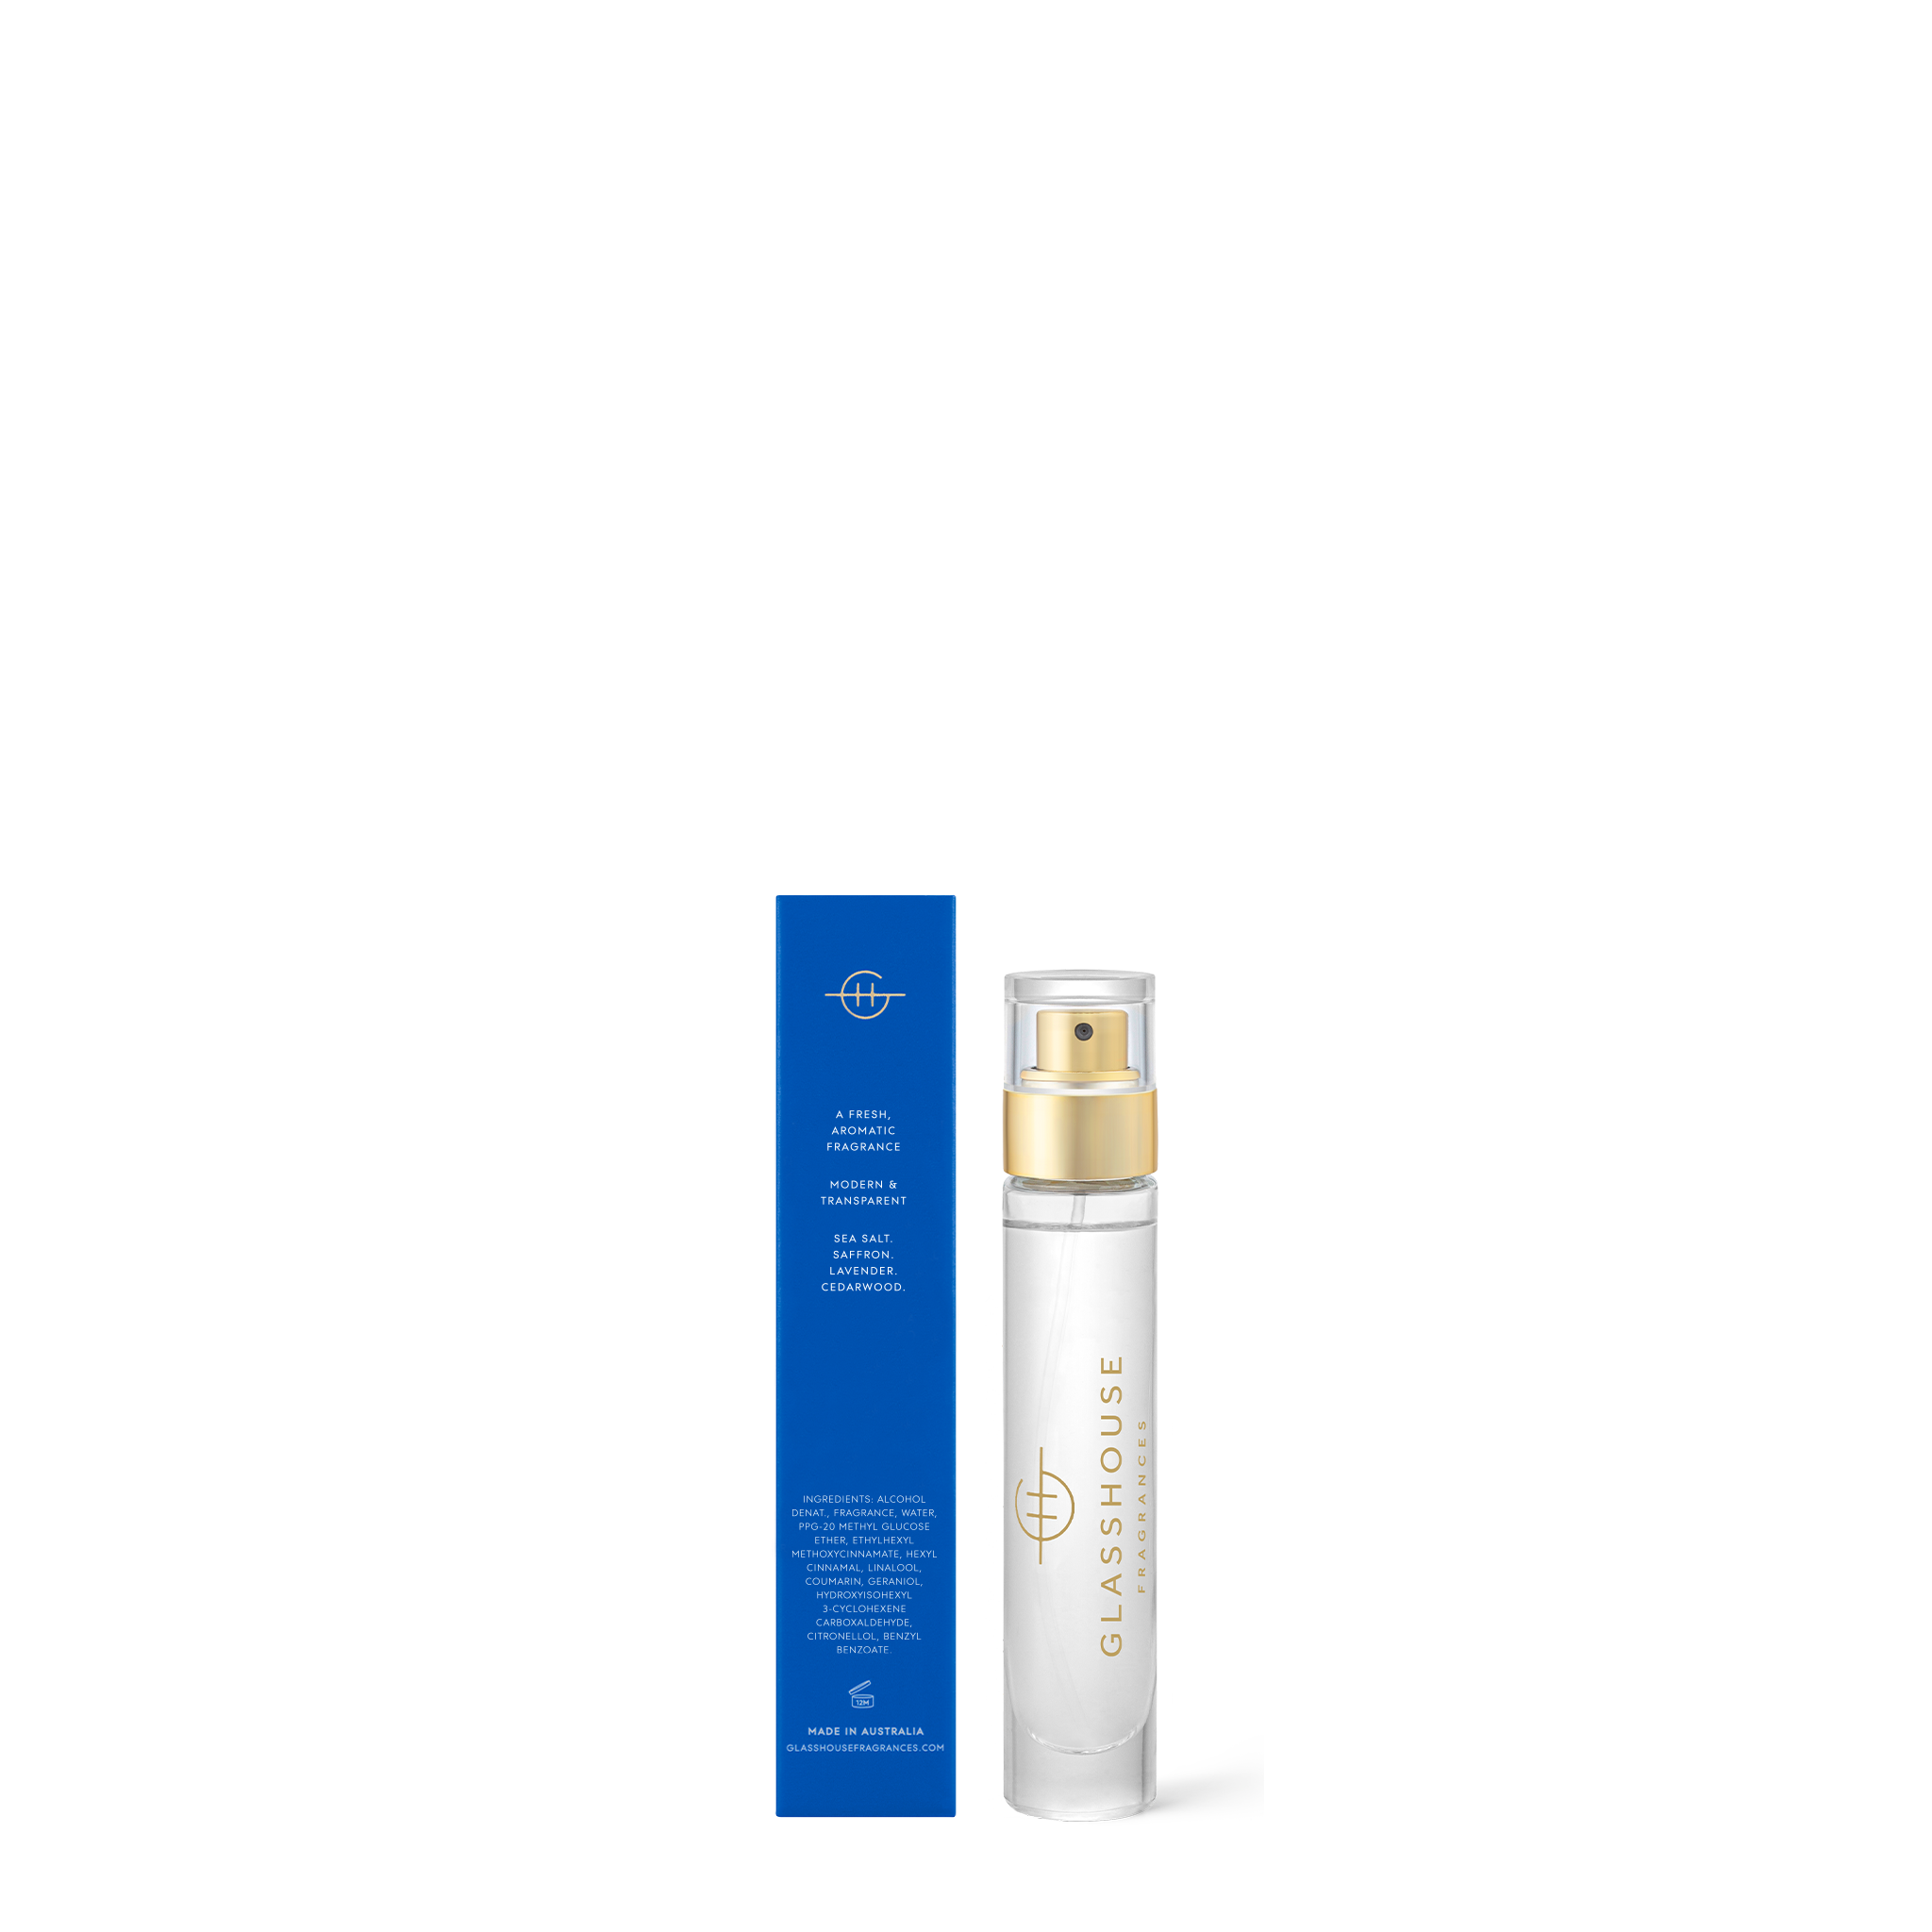 Glasshouse Fragrances Diving Into Cyprus Sea Salt & Saffron 14mL Eau de Parfum Spray with box - back of product